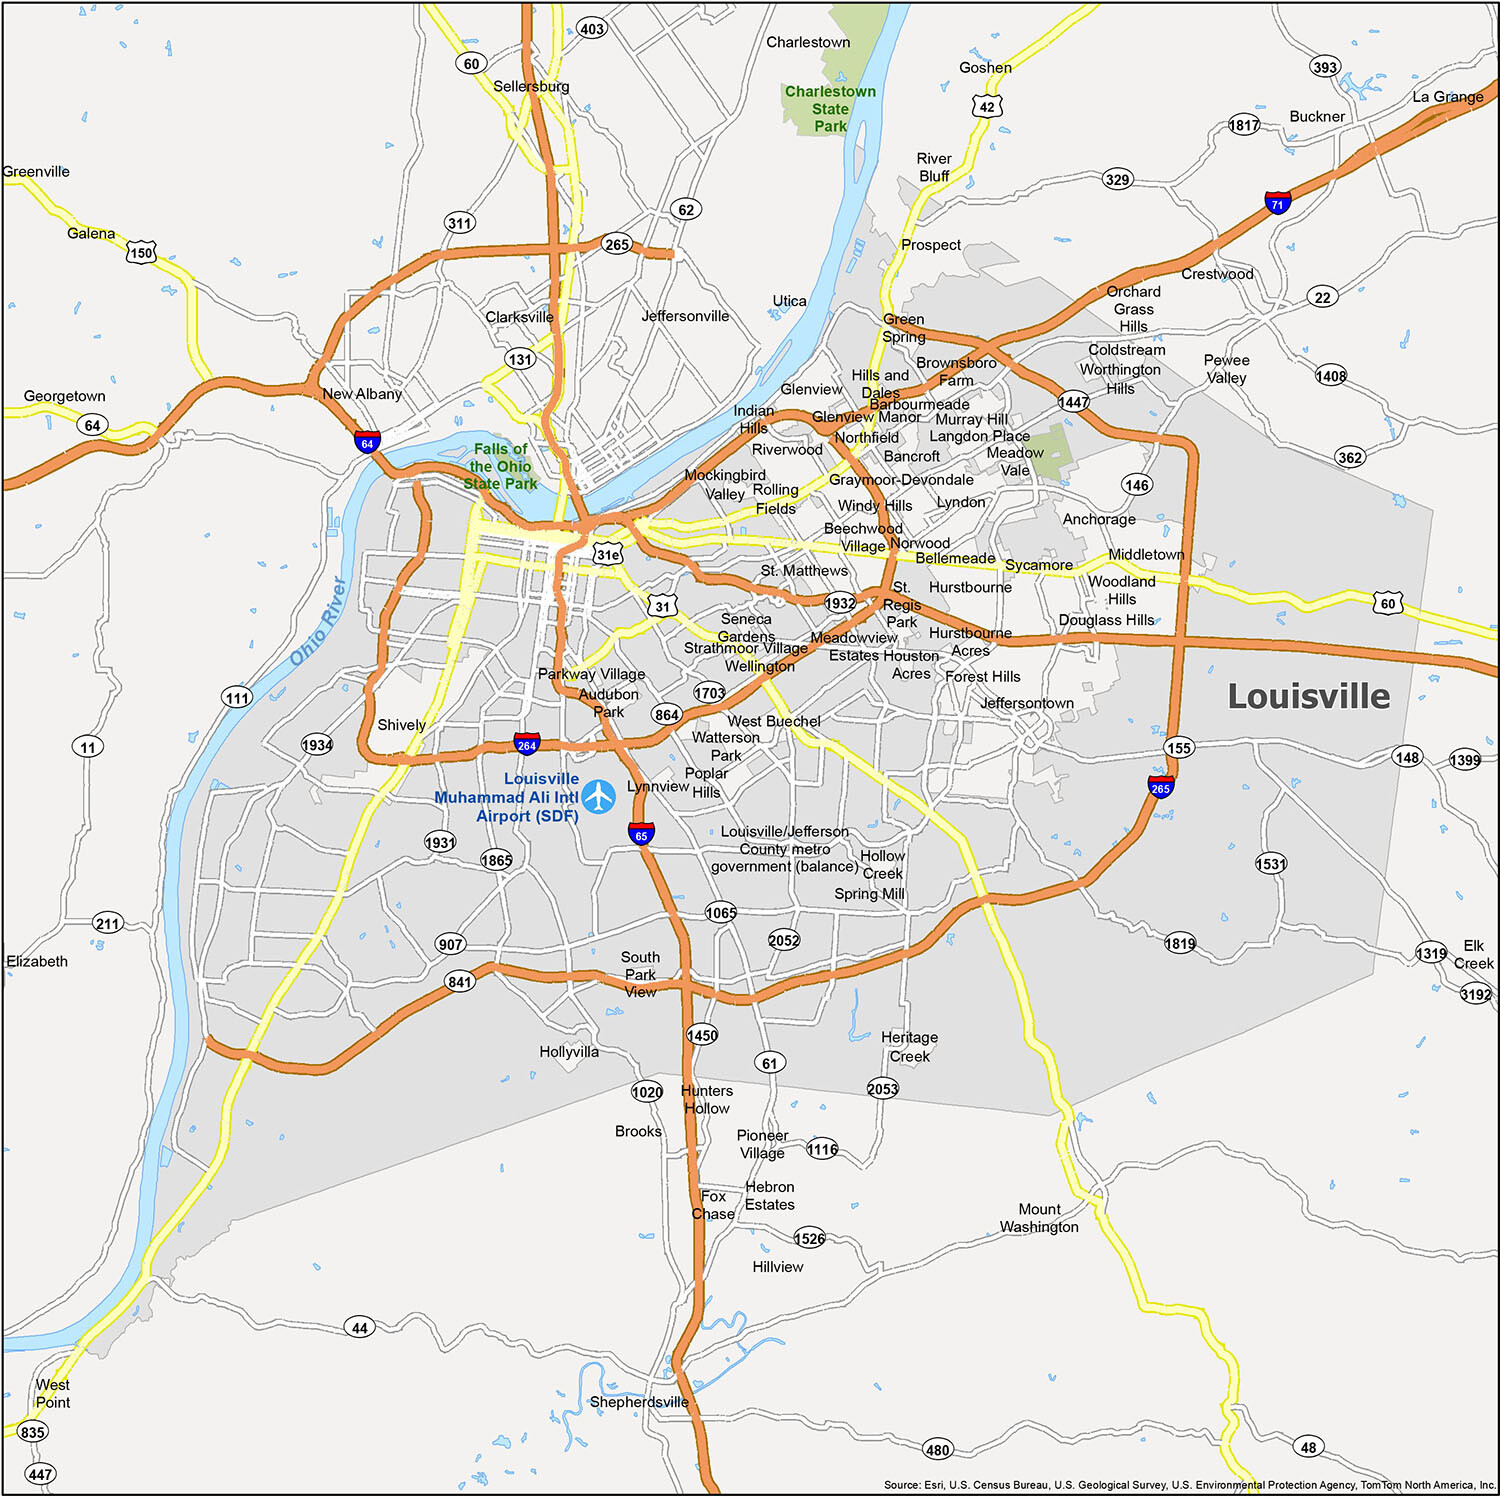 Louisville Kentucky City Street Map Blueprints Fleece Blanket by